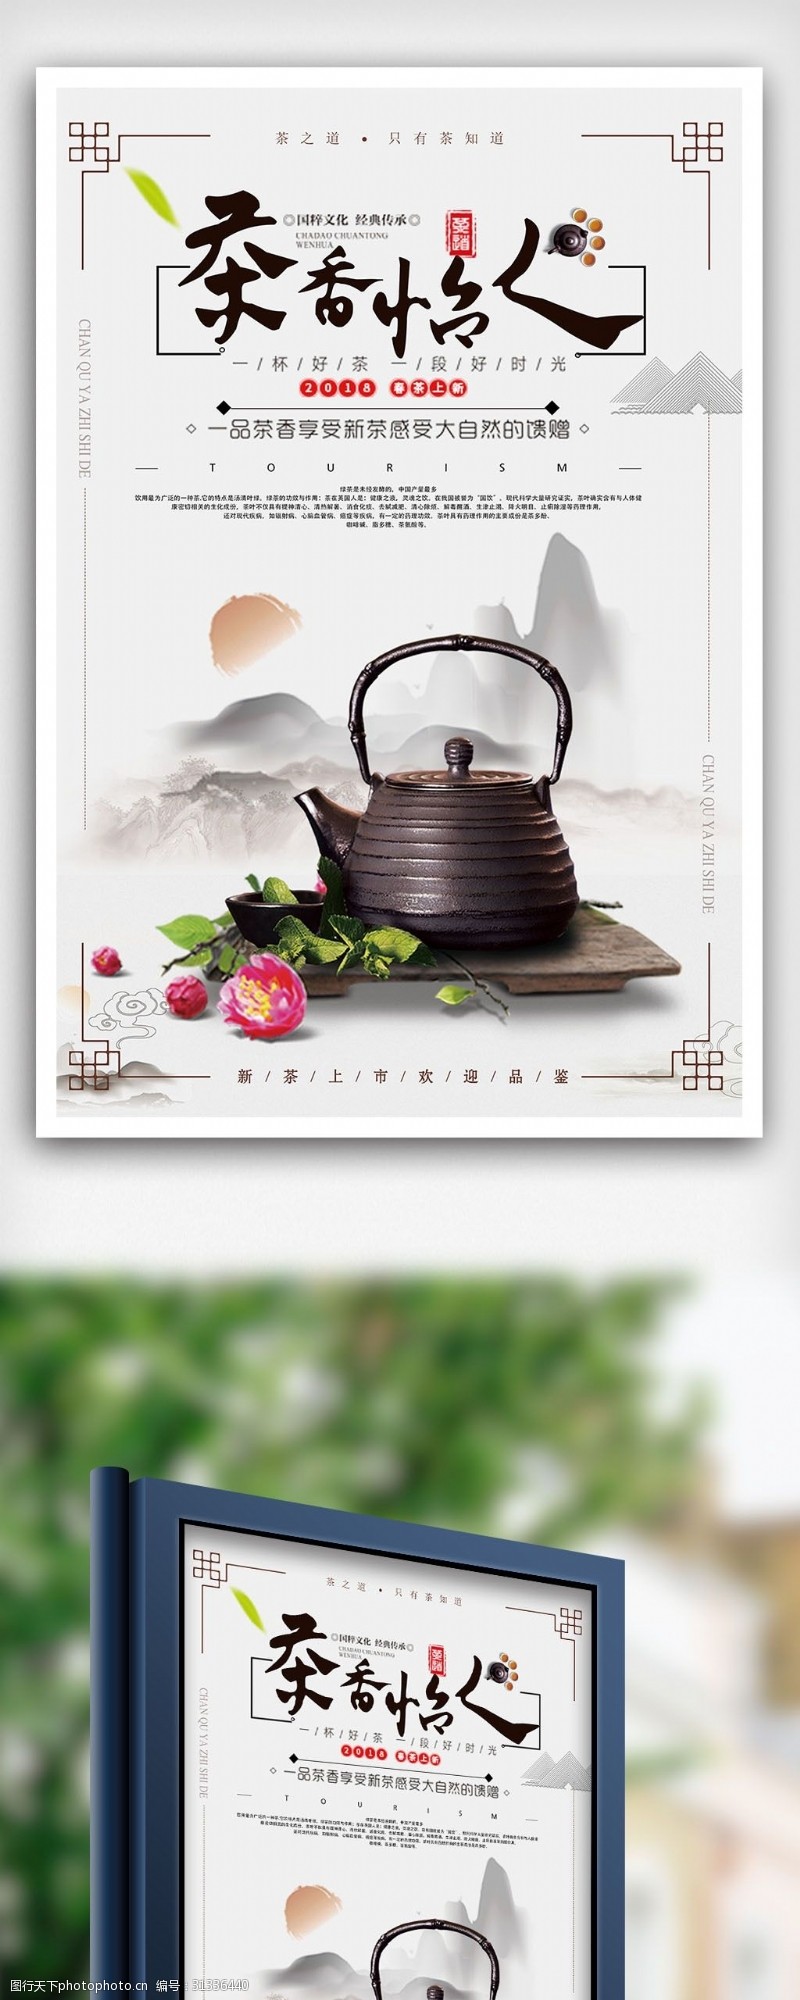 茶制作流程古典中国风茶香怡人饮茶文化海报设计